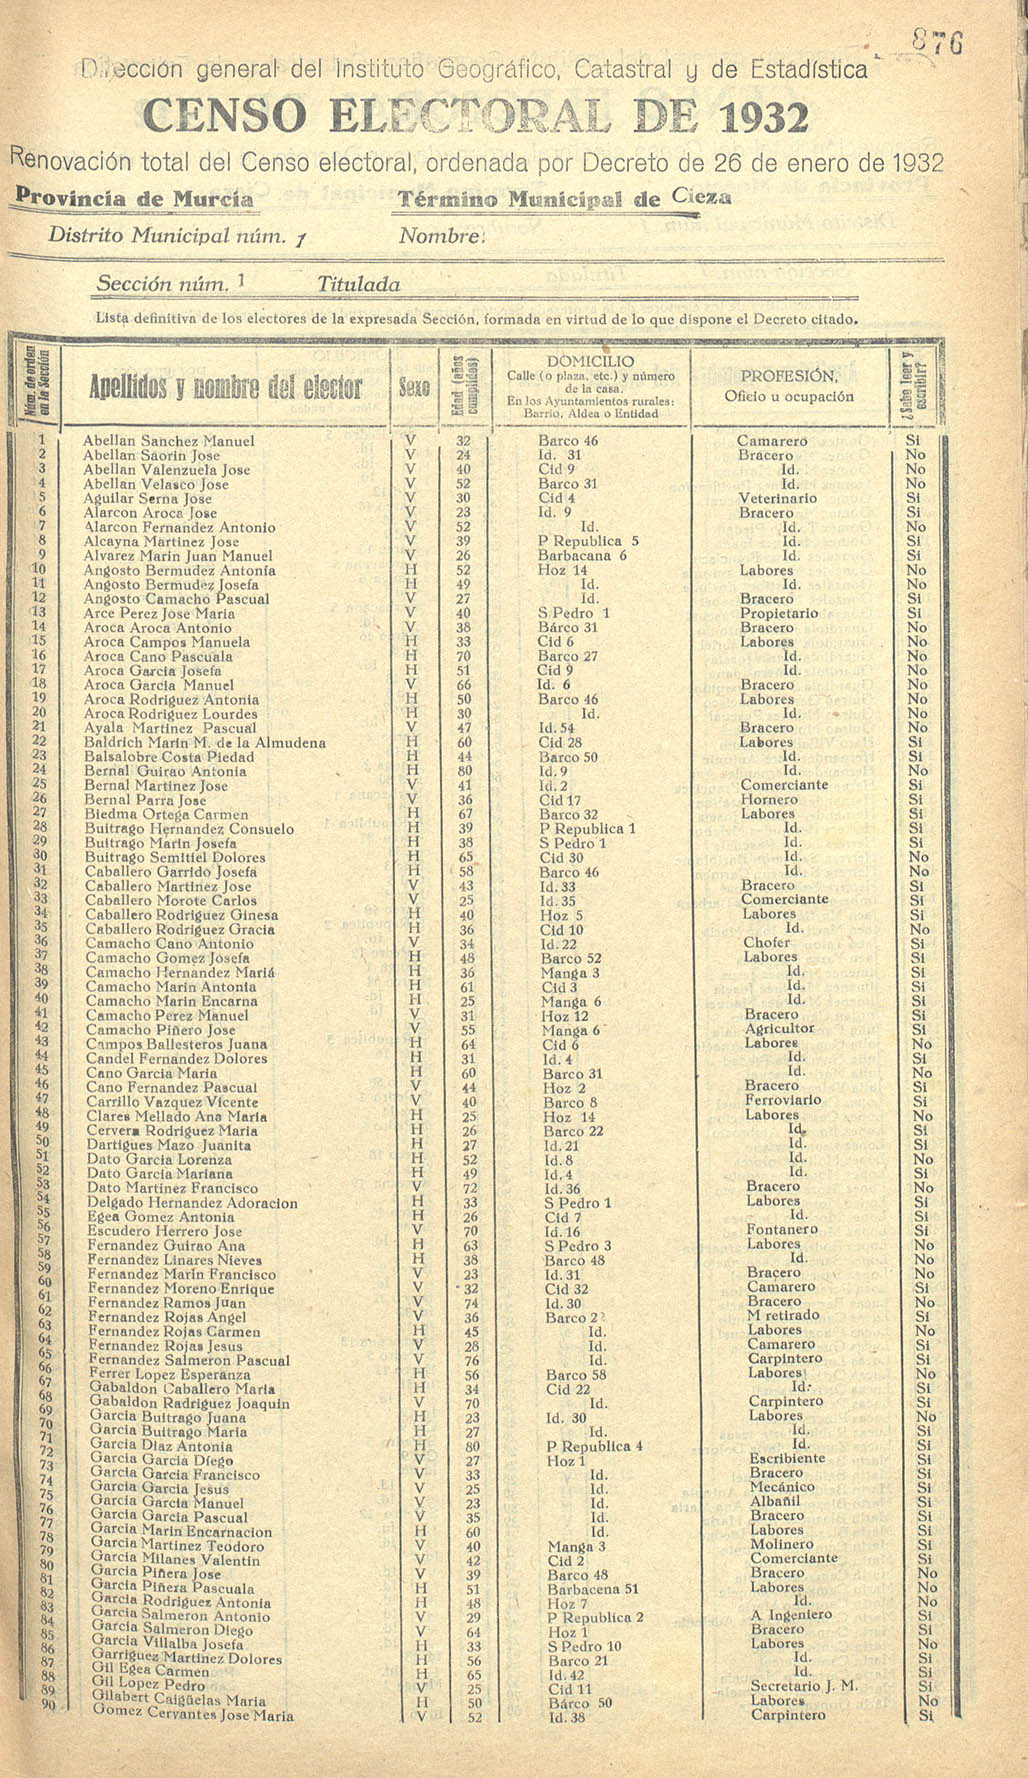 Censo electoral provincial de 1932. Listas definitivas de Cieza, formadas en virtud del Decreto de 26 de enero de 1932.